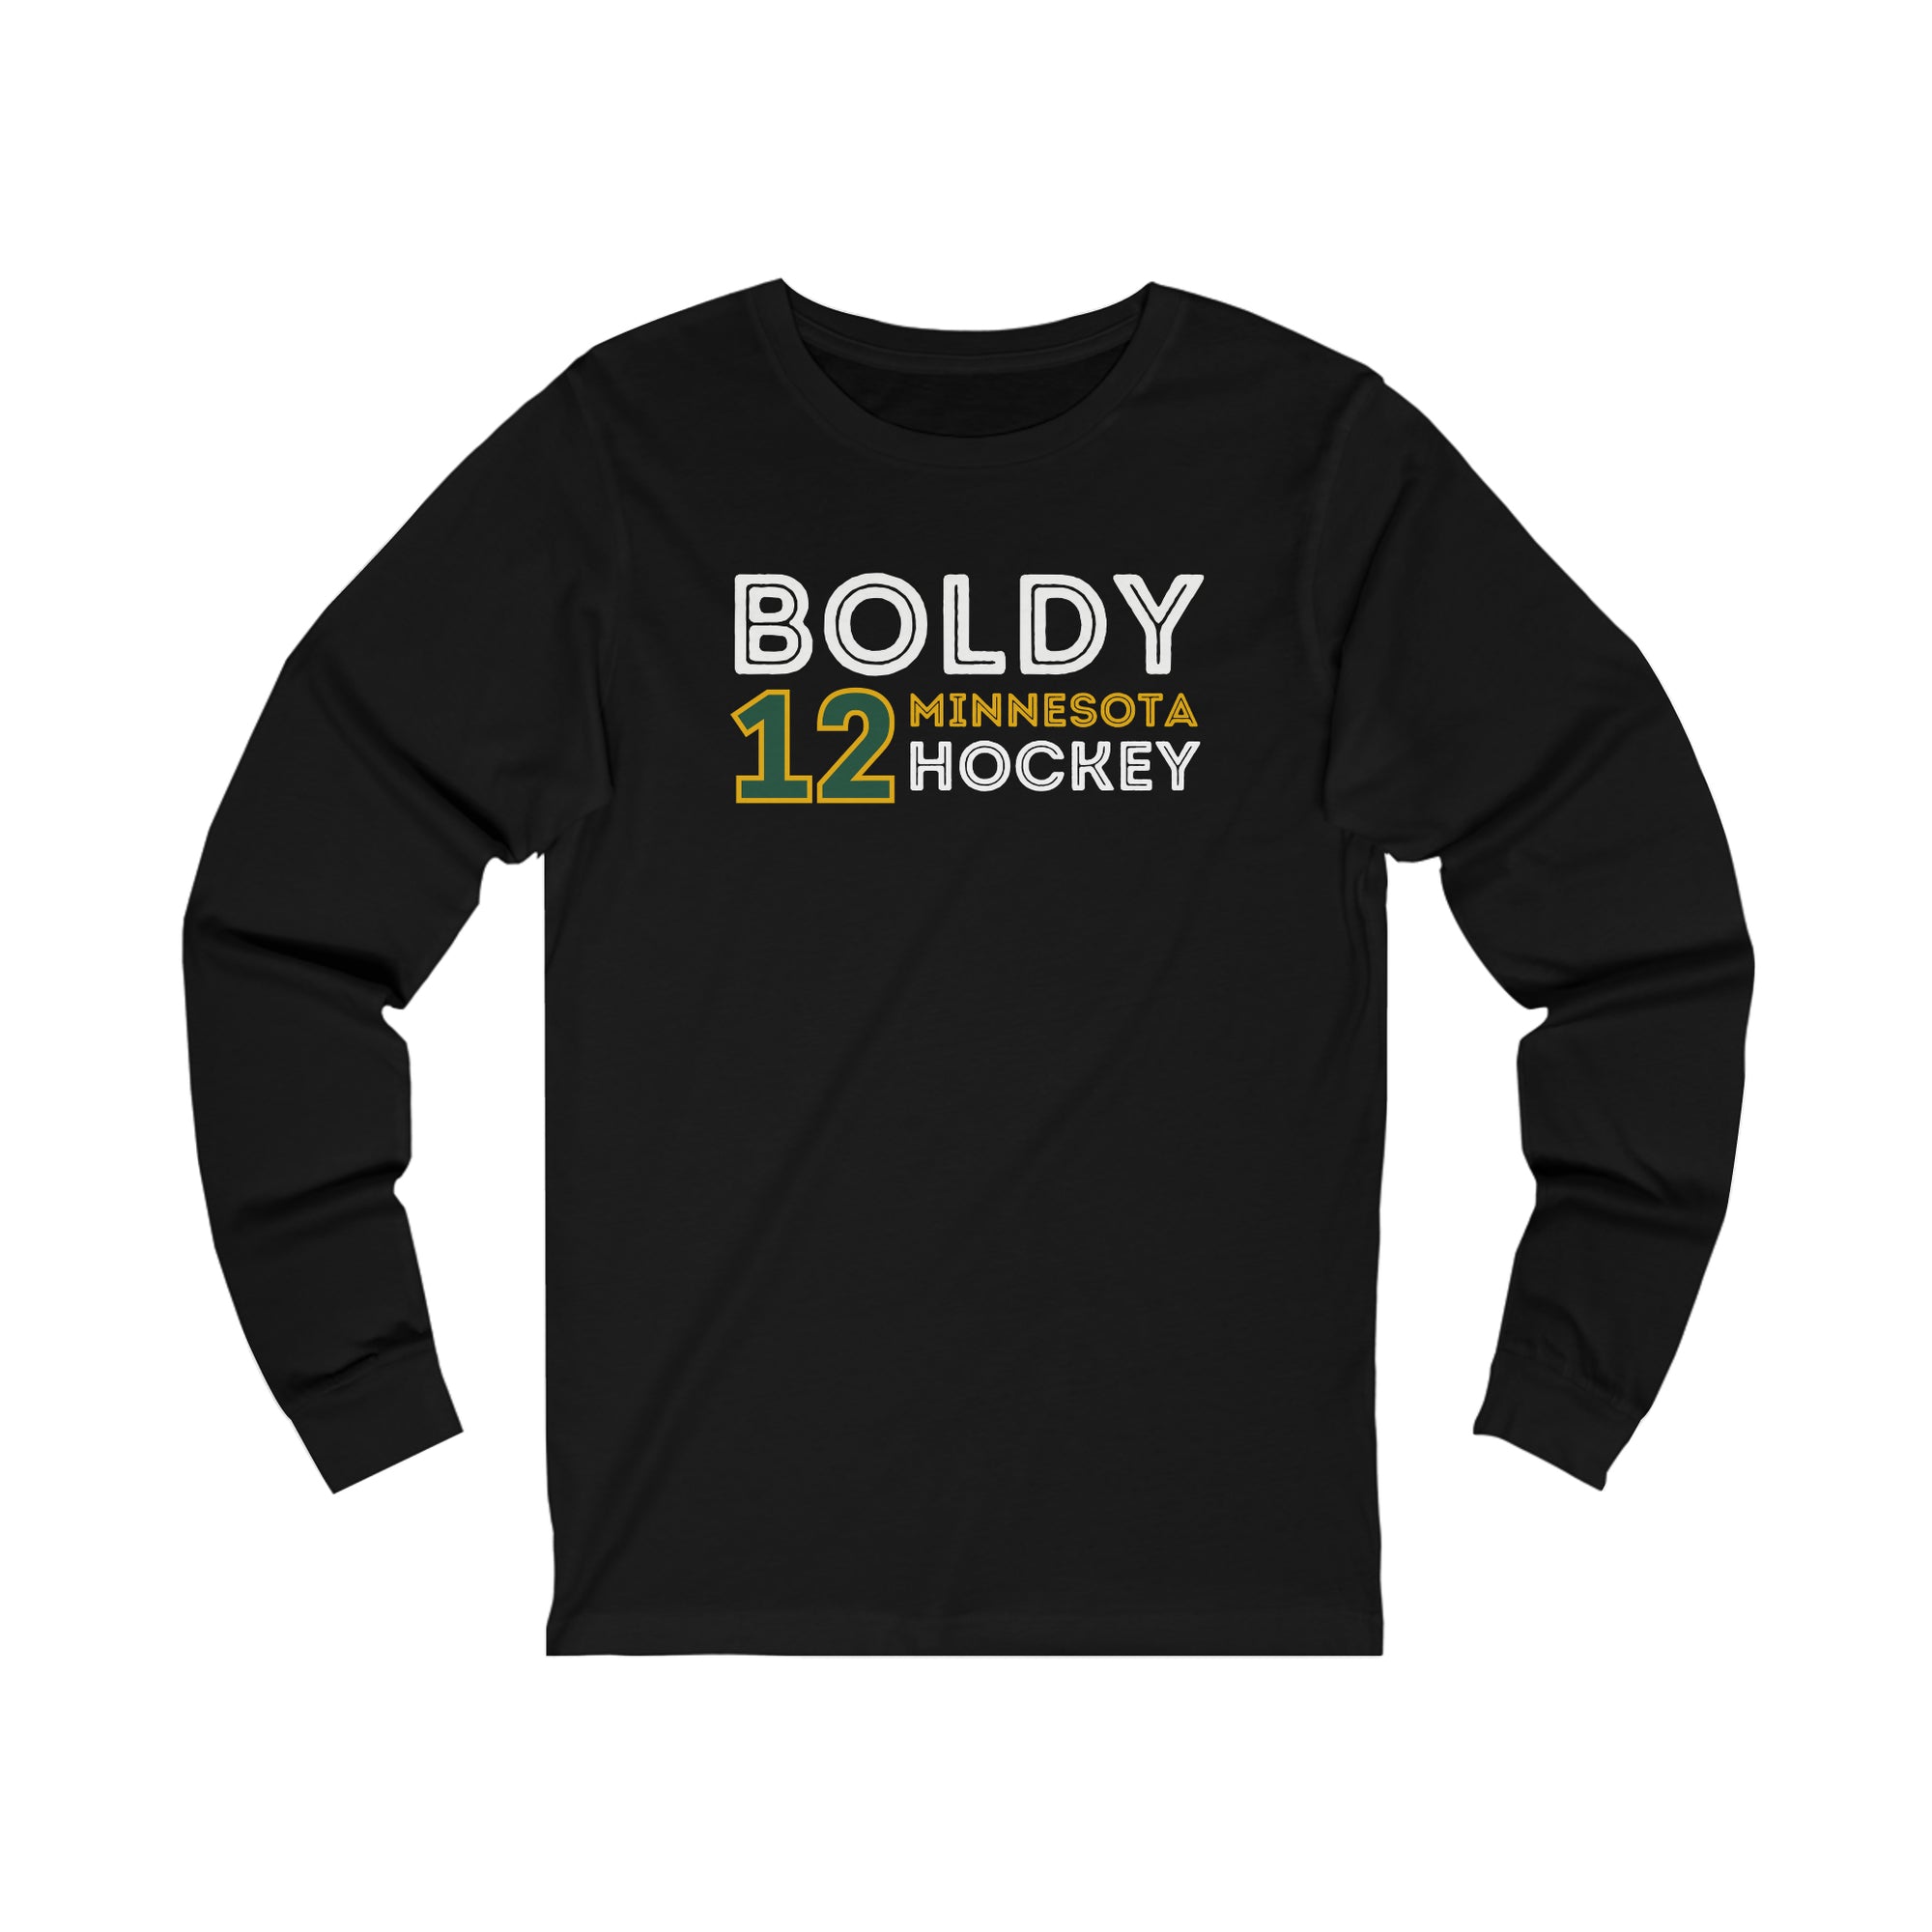 Matt Boldy Shirt